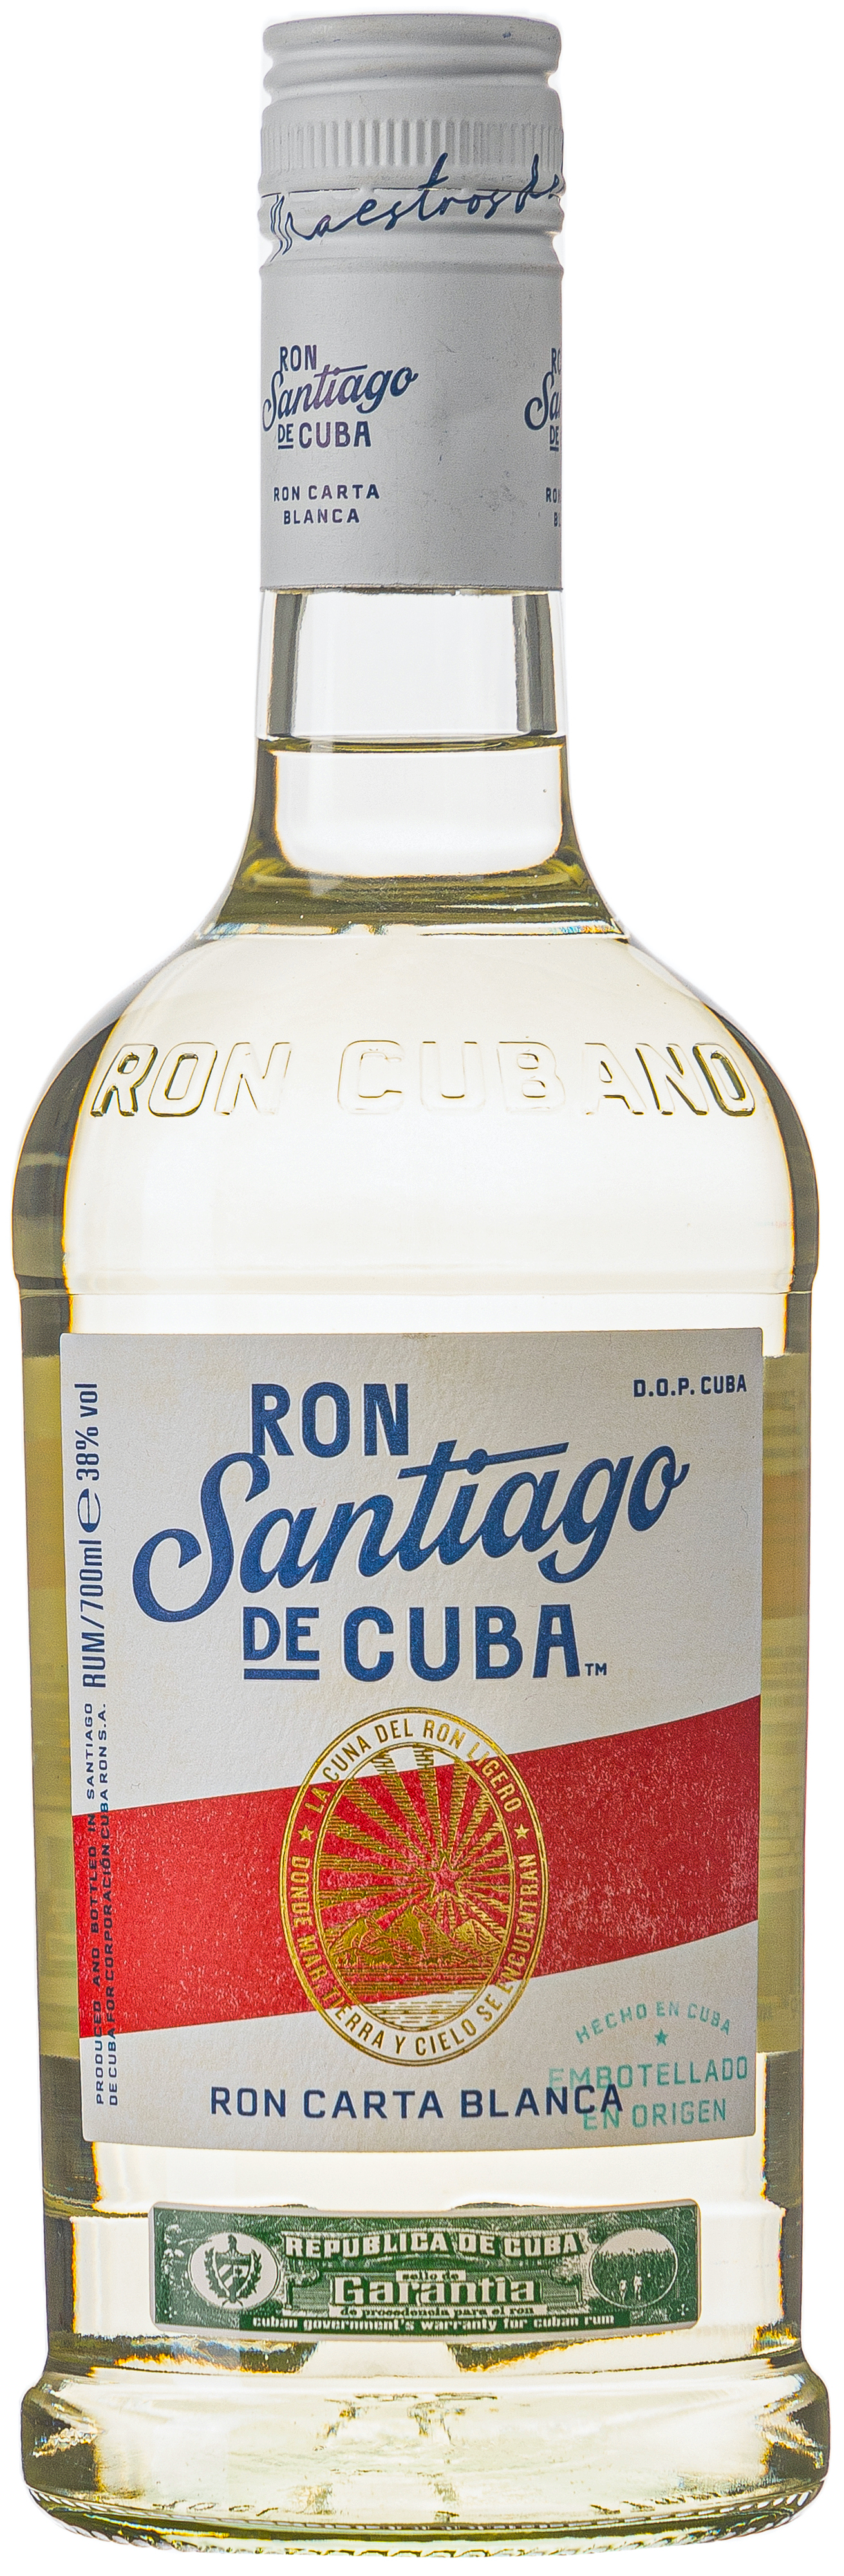 Ron Santiago de Cuba Carta Blanca 38% vol. 0,7L 